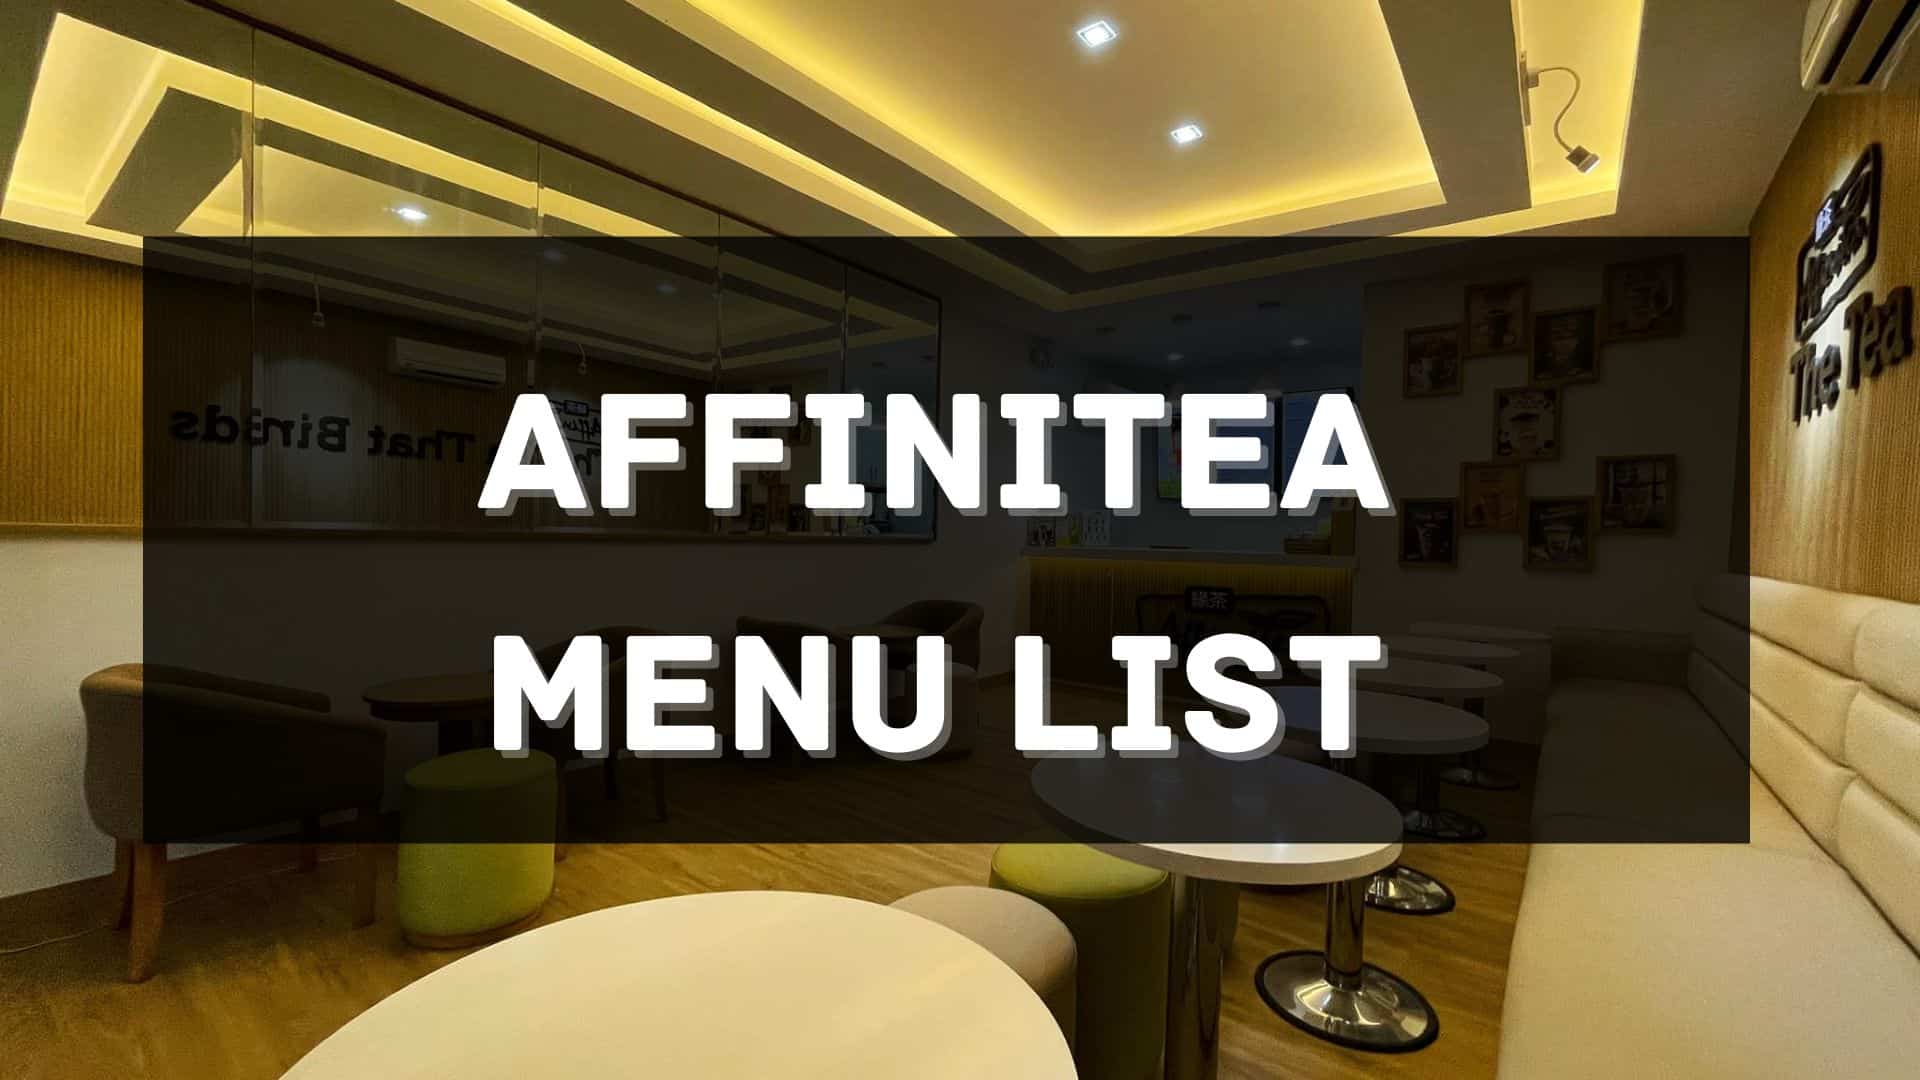 affinitea menu prices philippines